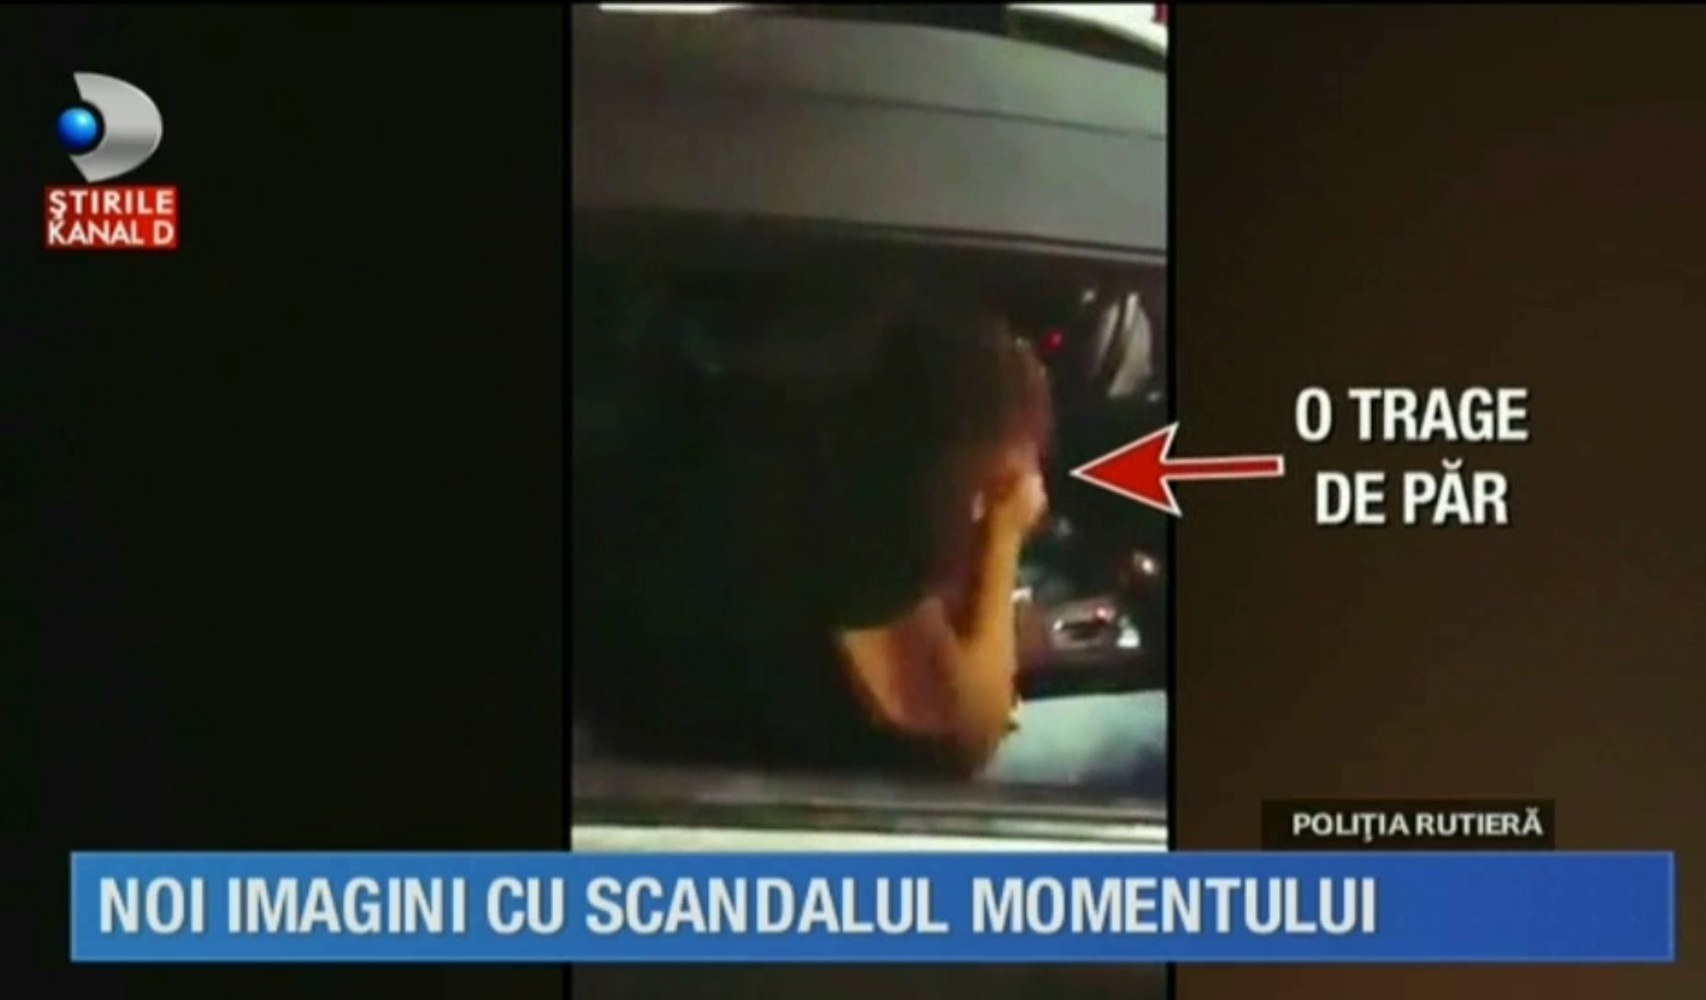 Din imaginile KanalD pare că politicianul şi-ar fi agresat inclusiv iubita în seara incidentului